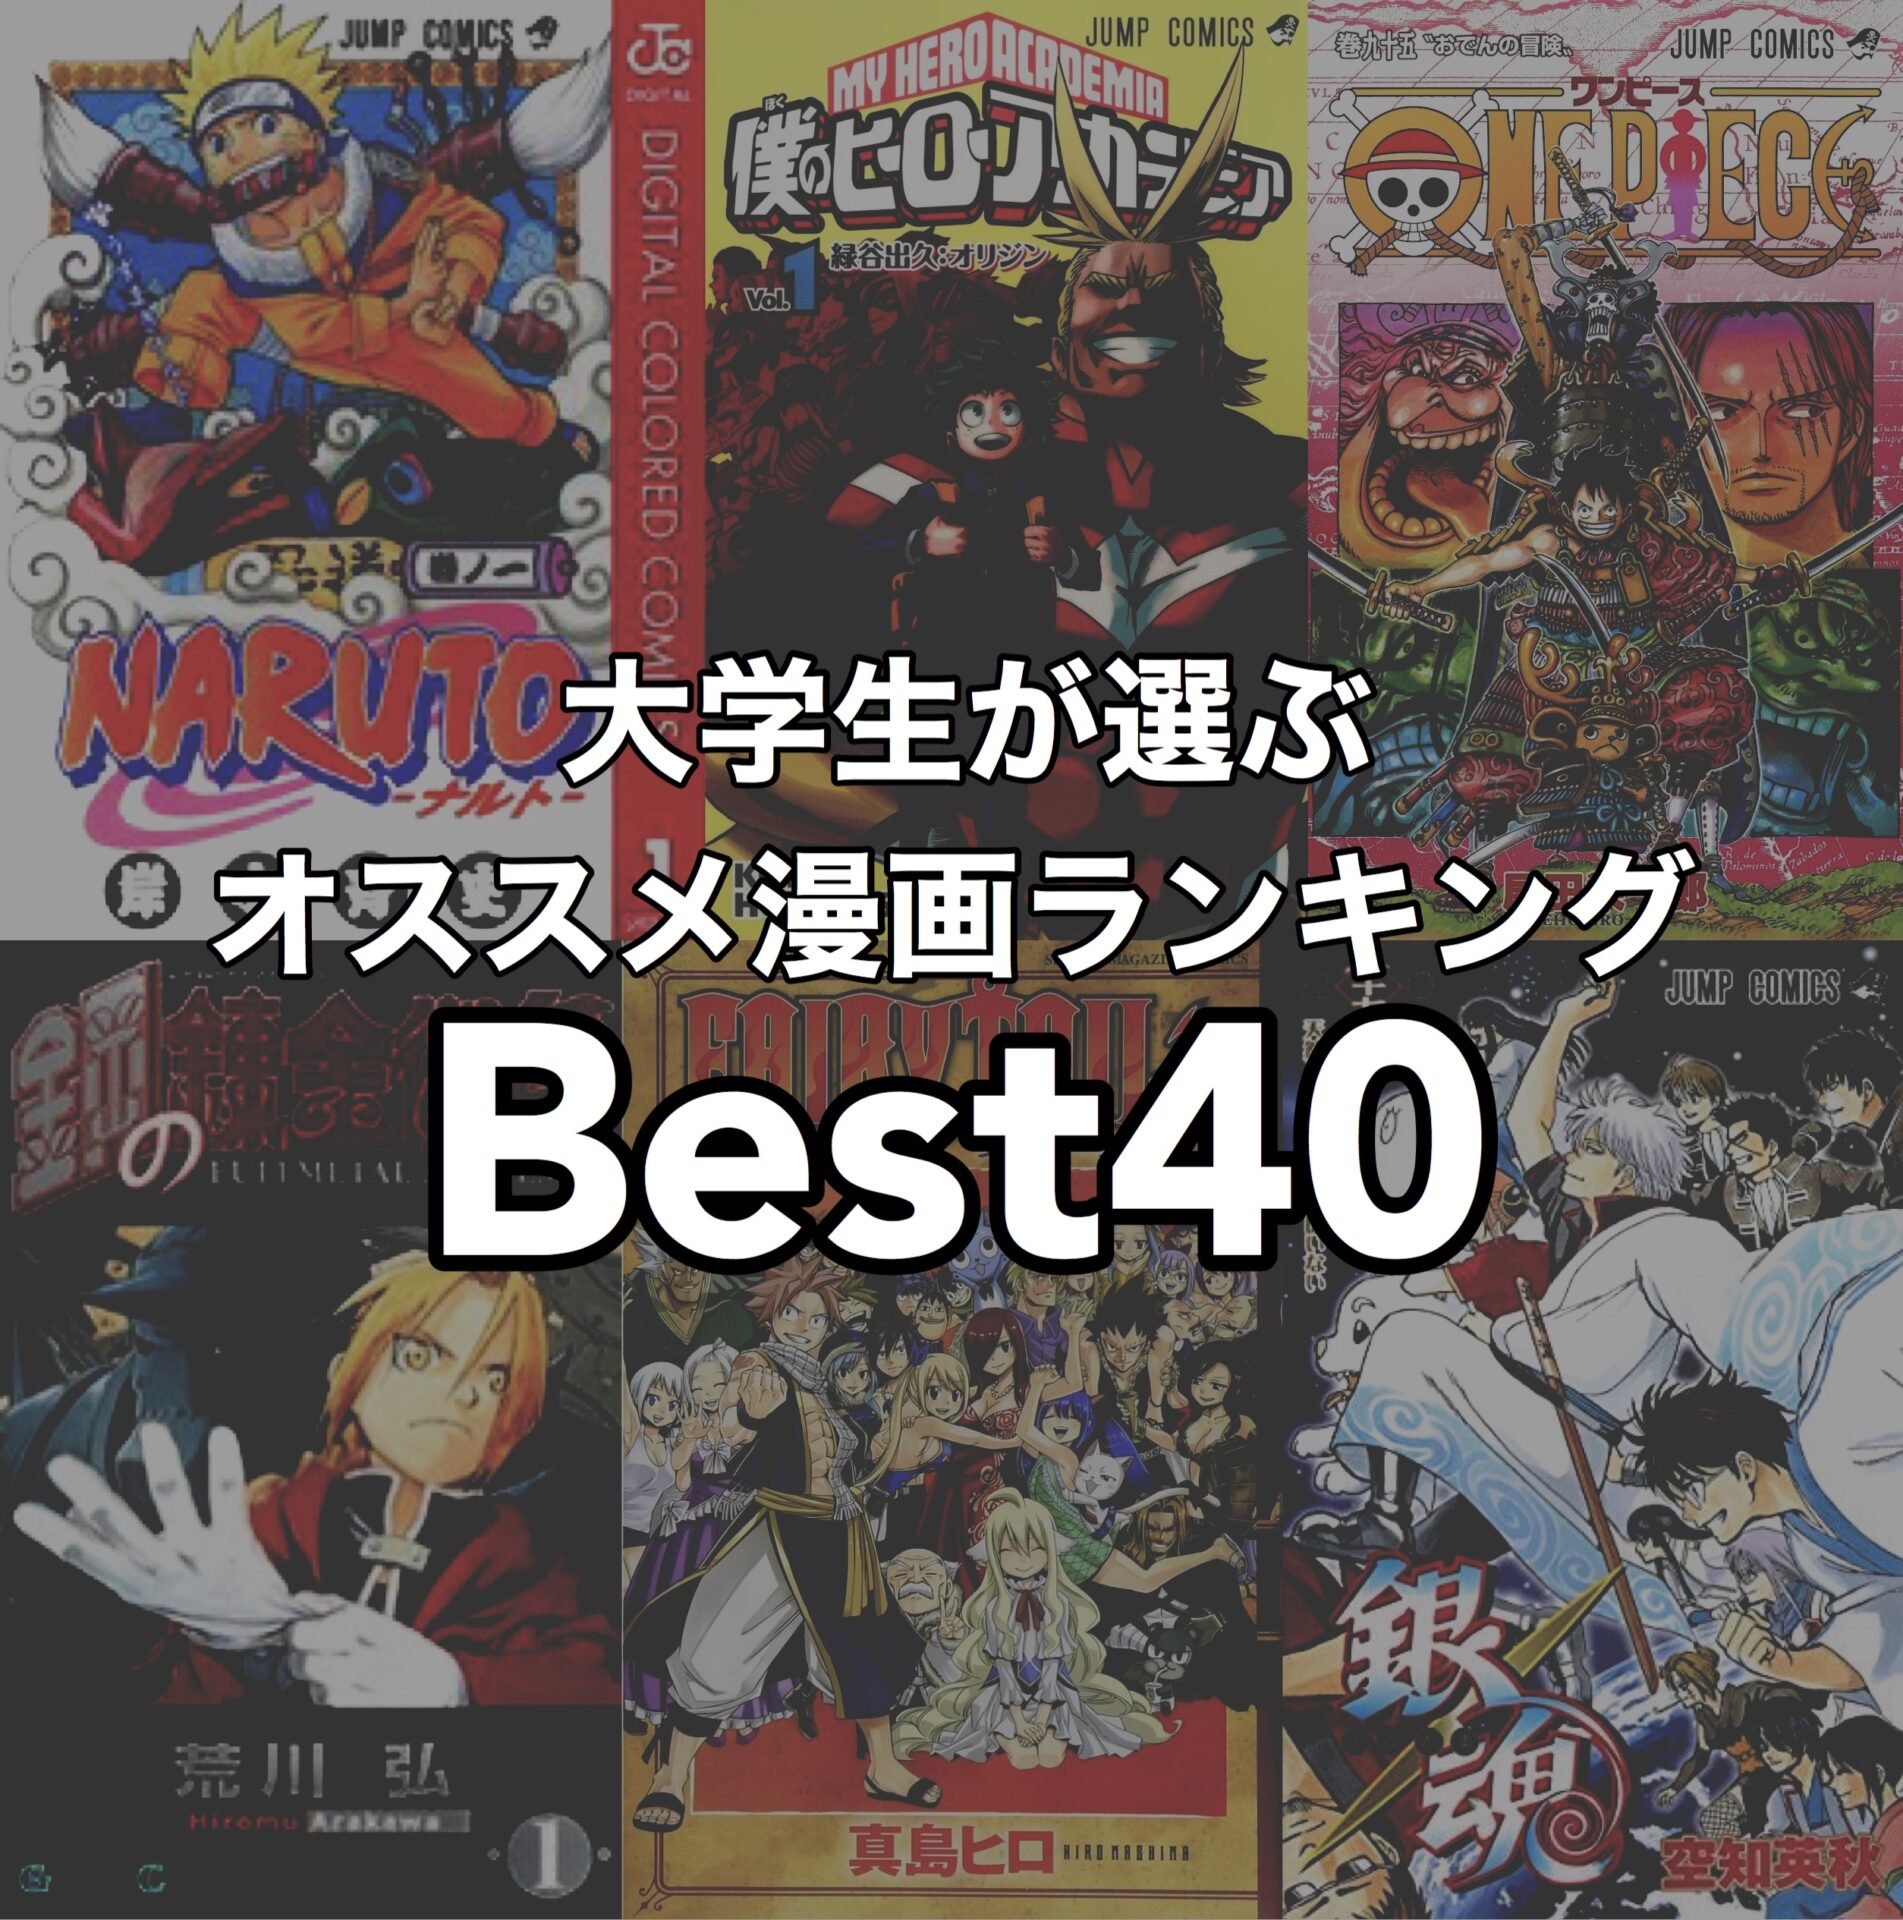 大学生が選ぶ 人気漫画のオススメランキングベスト40 年版 Reiの趣味ブログ